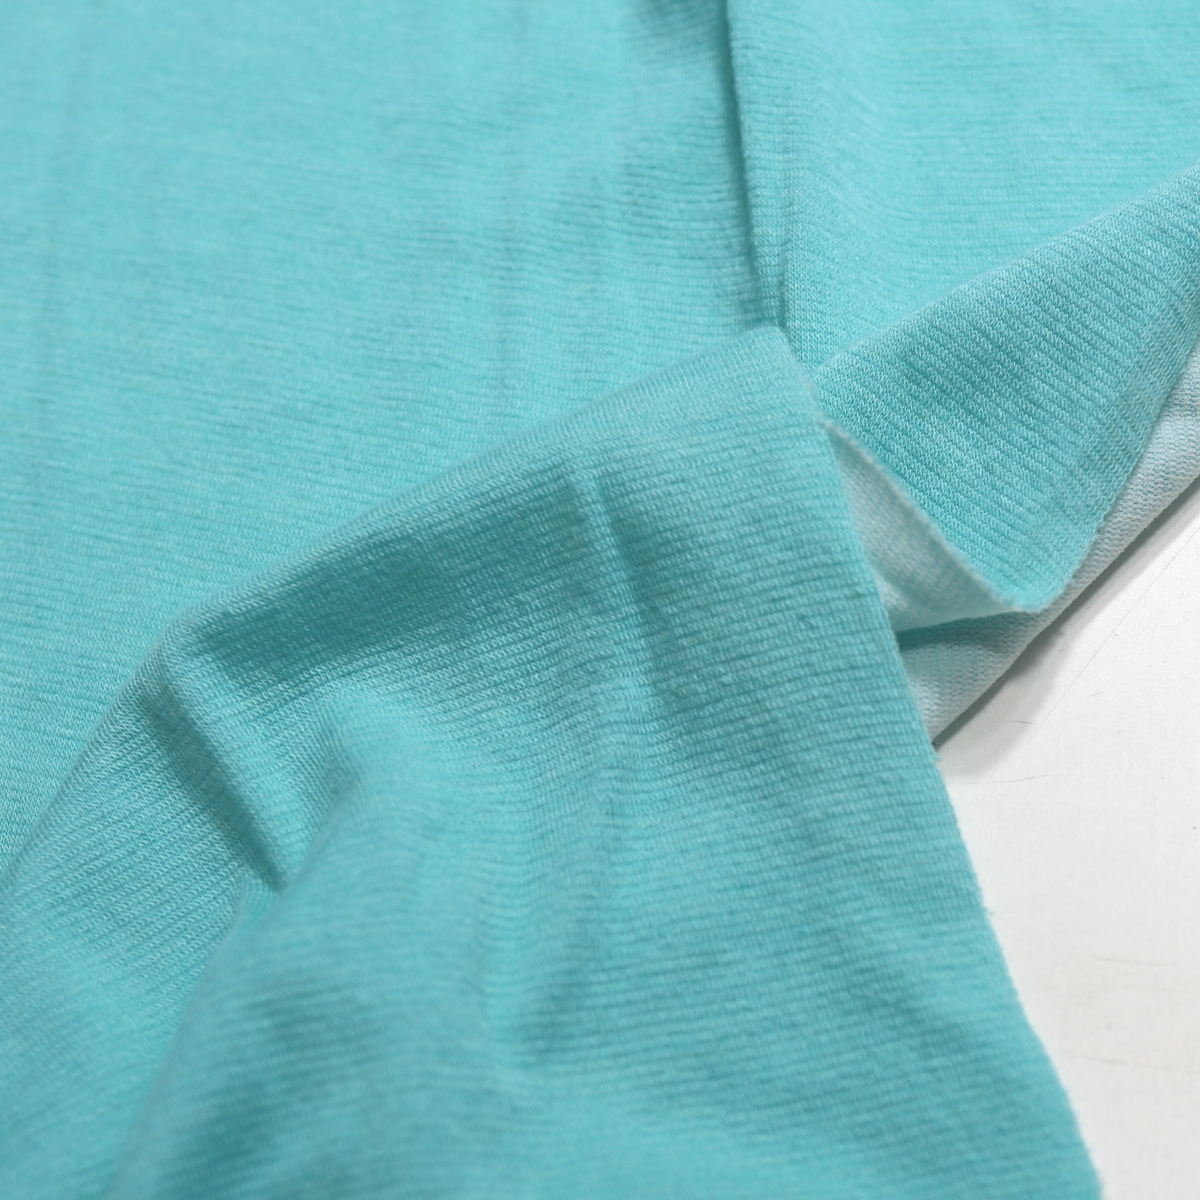 Babyblau Bekleidungsjersey Baby-Jersey weich elastisch knitterarm Meterware